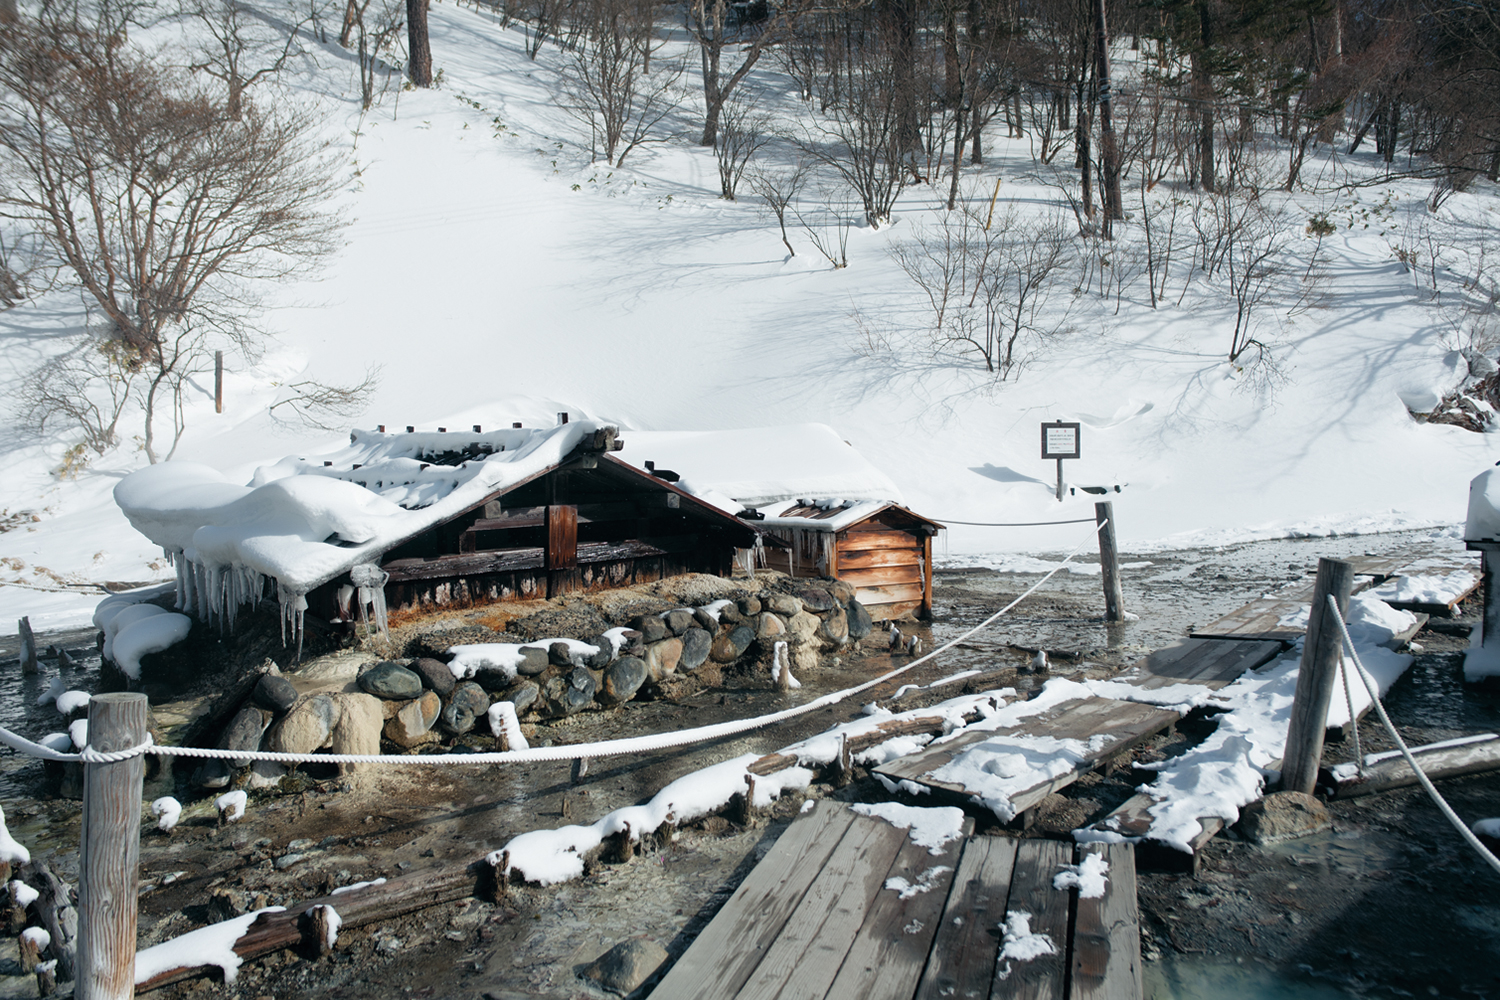 スノーシューの楽しみ方 スノーシューで雪山を楽しもう Yamakei Online 山と渓谷社